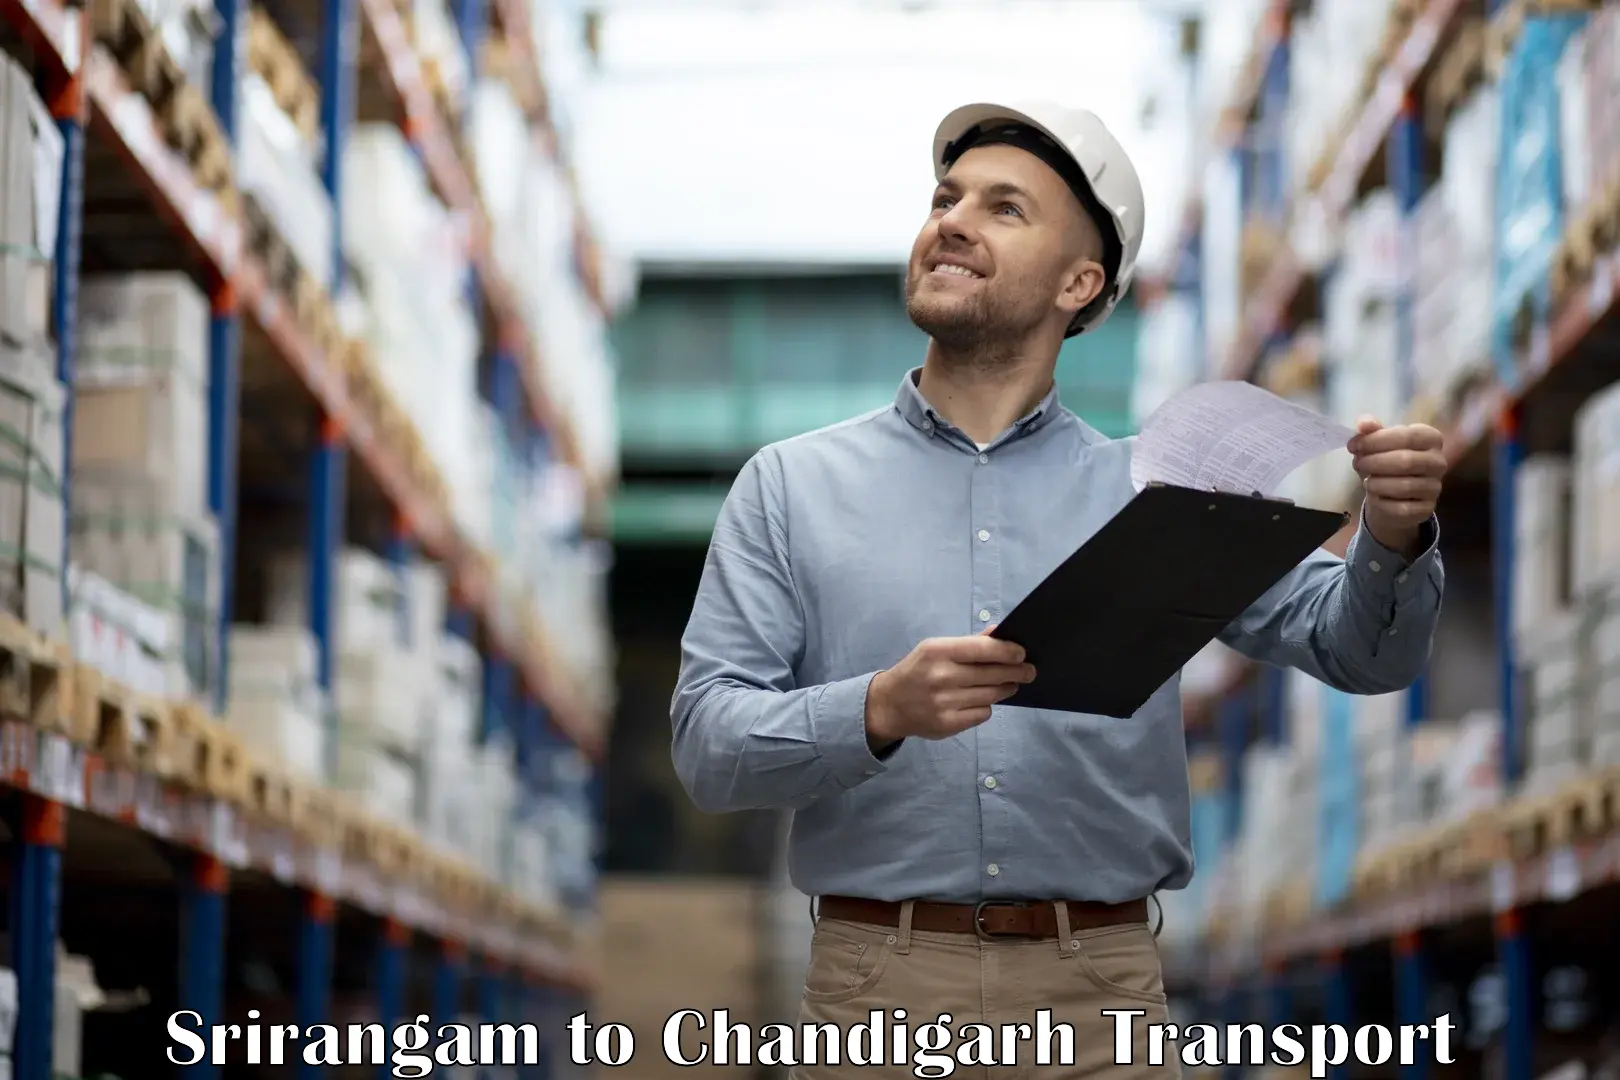 Cycle transportation service Srirangam to Chandigarh